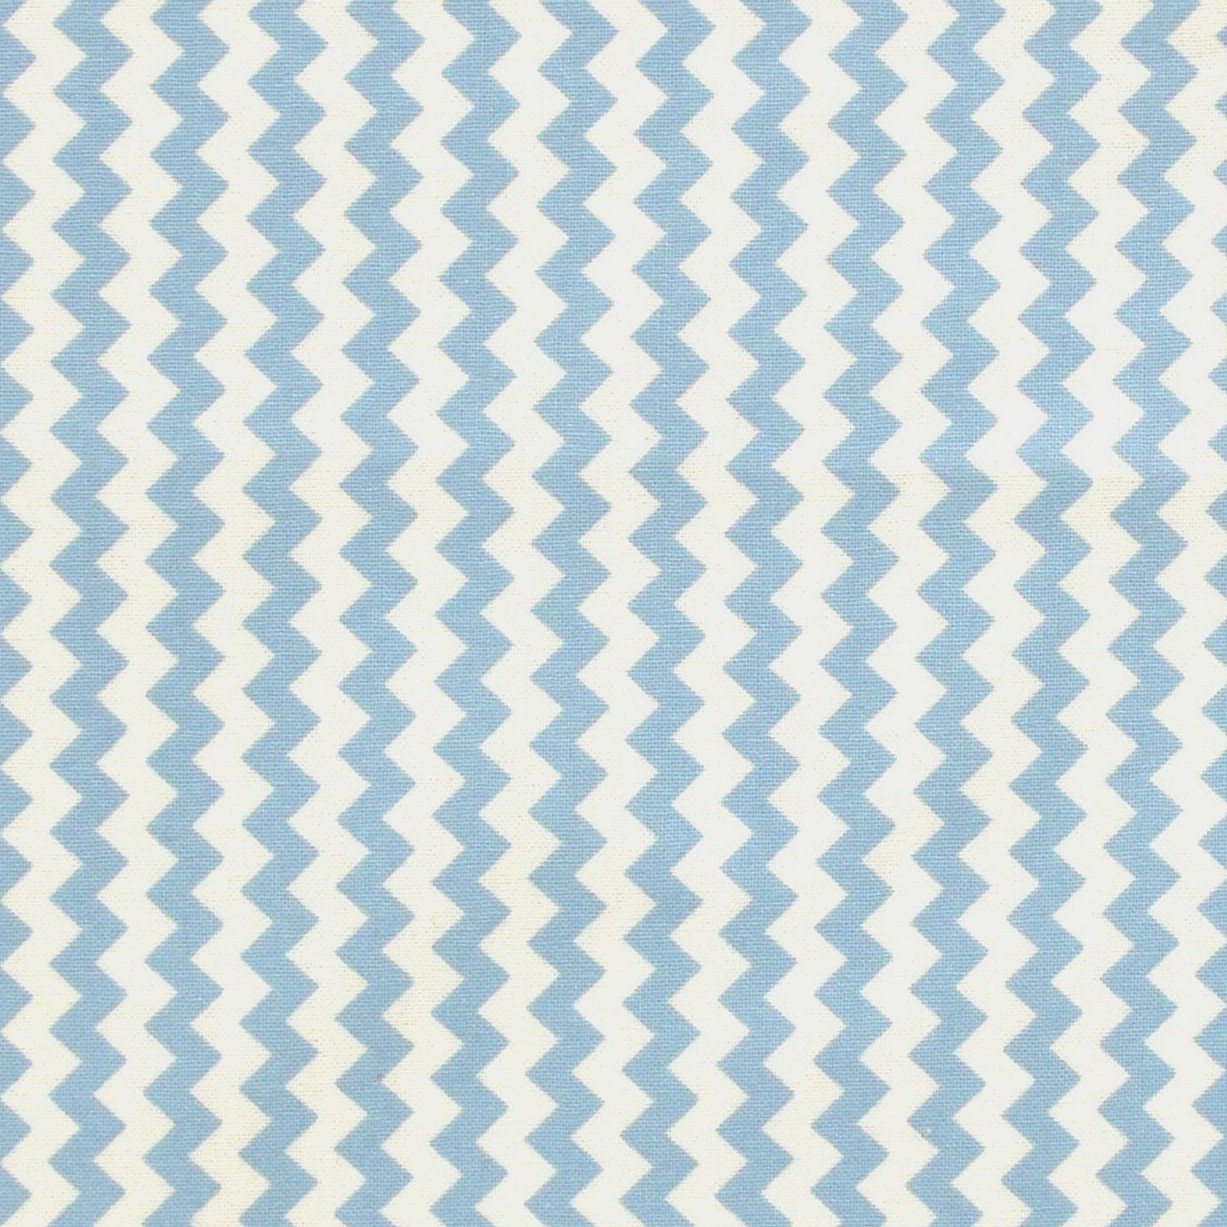 Chevron White & Blue Stripes Cotton Fabric